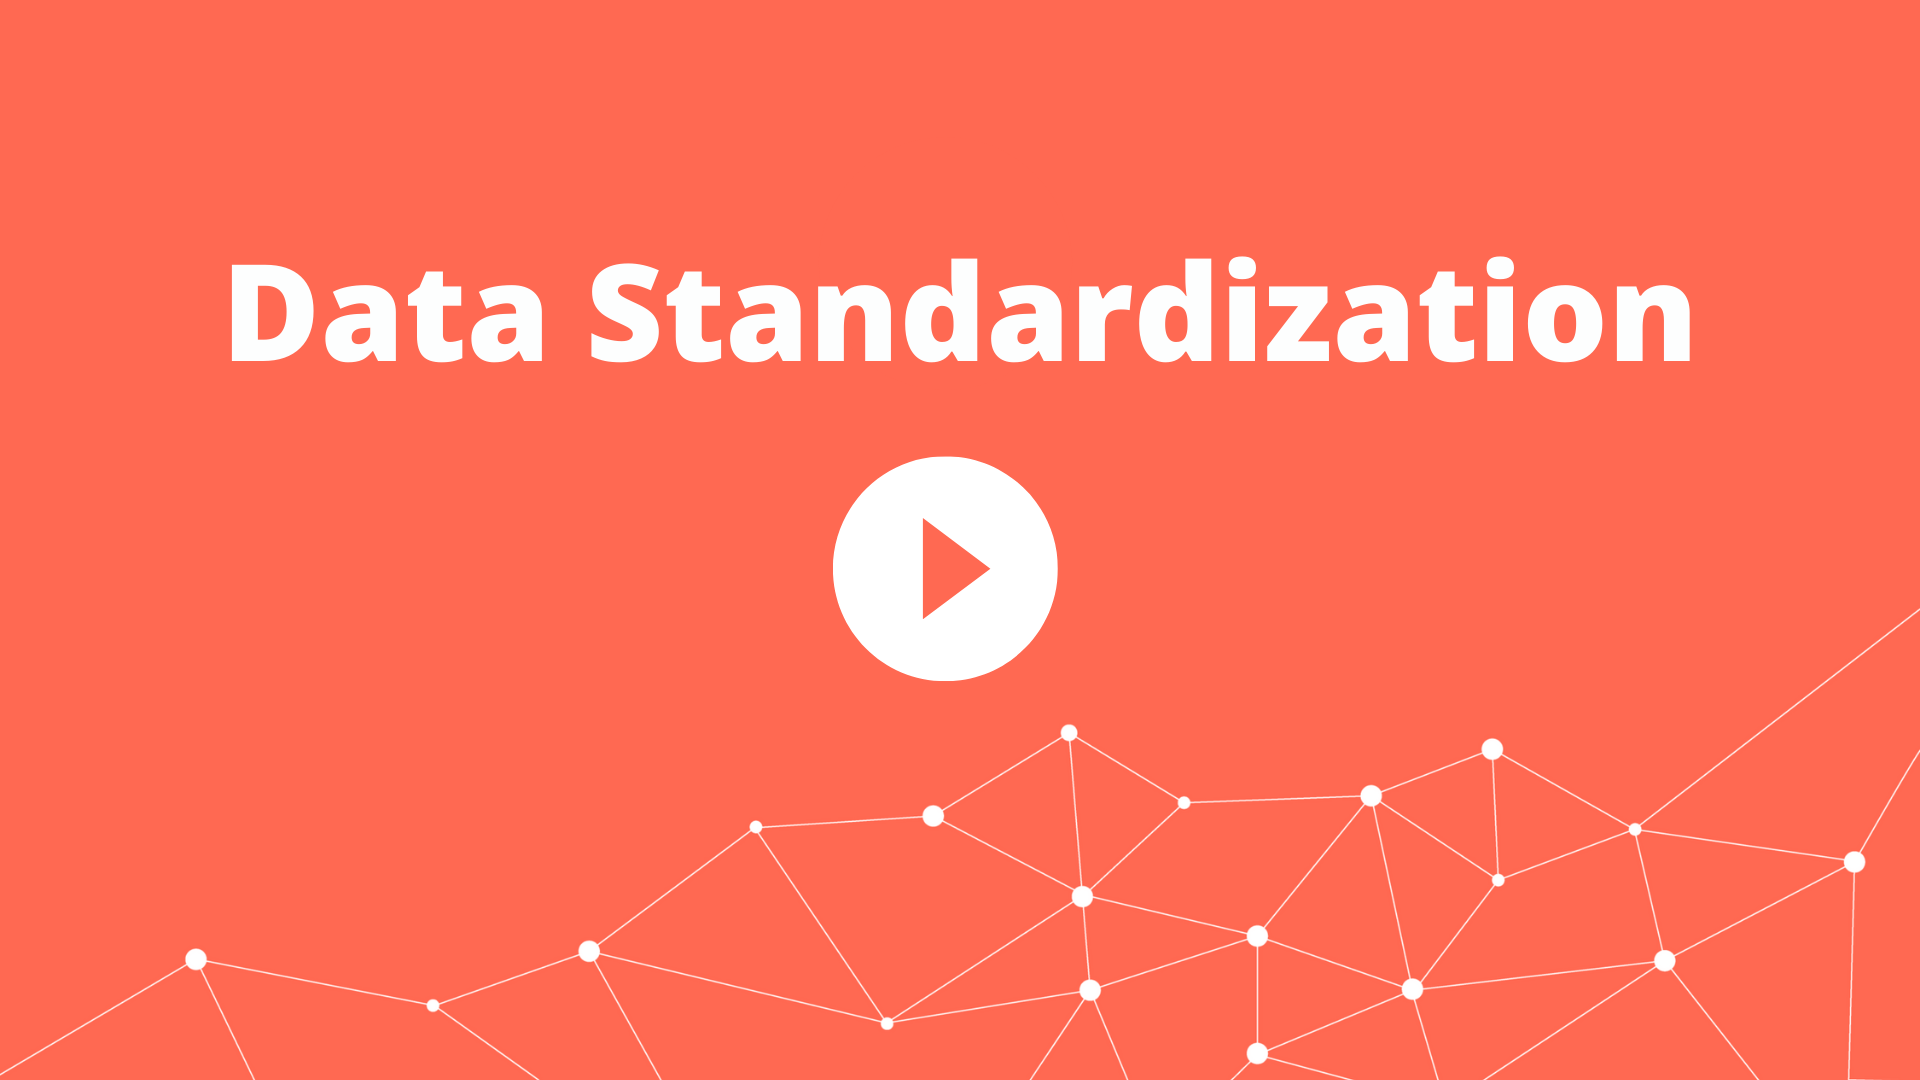 Data Standardization